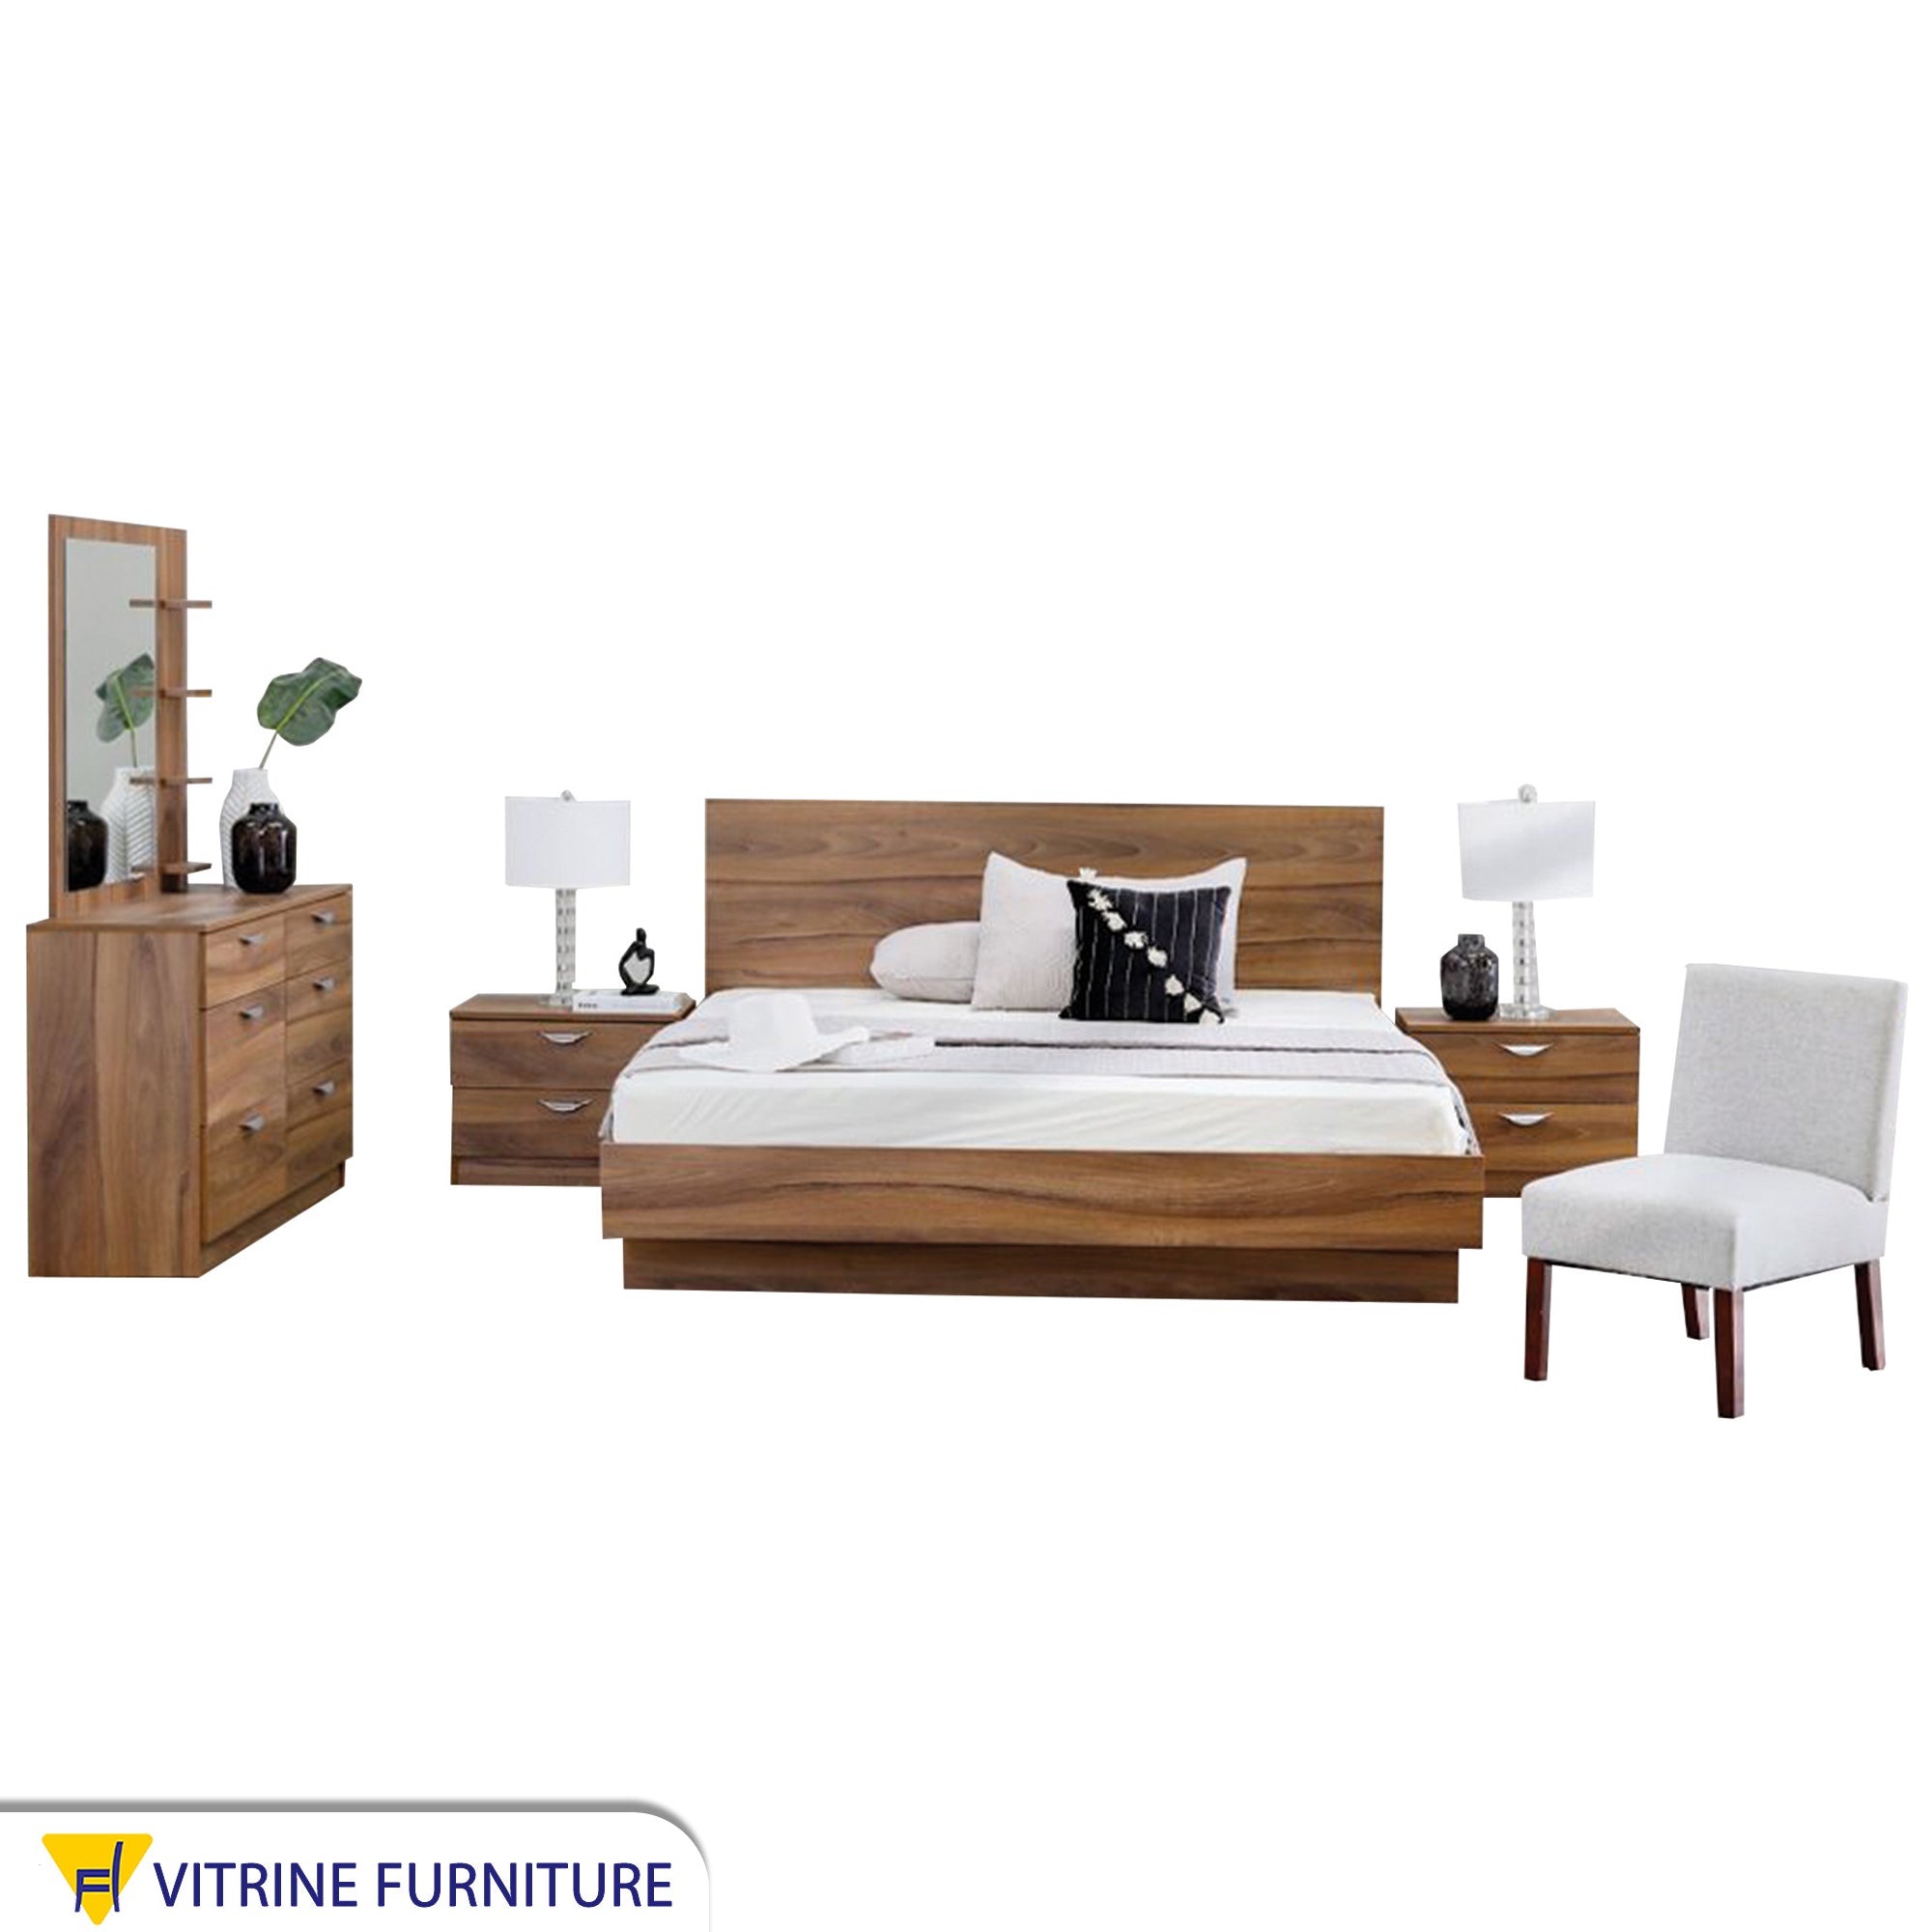 Master bedroom in luxurious wooden brown